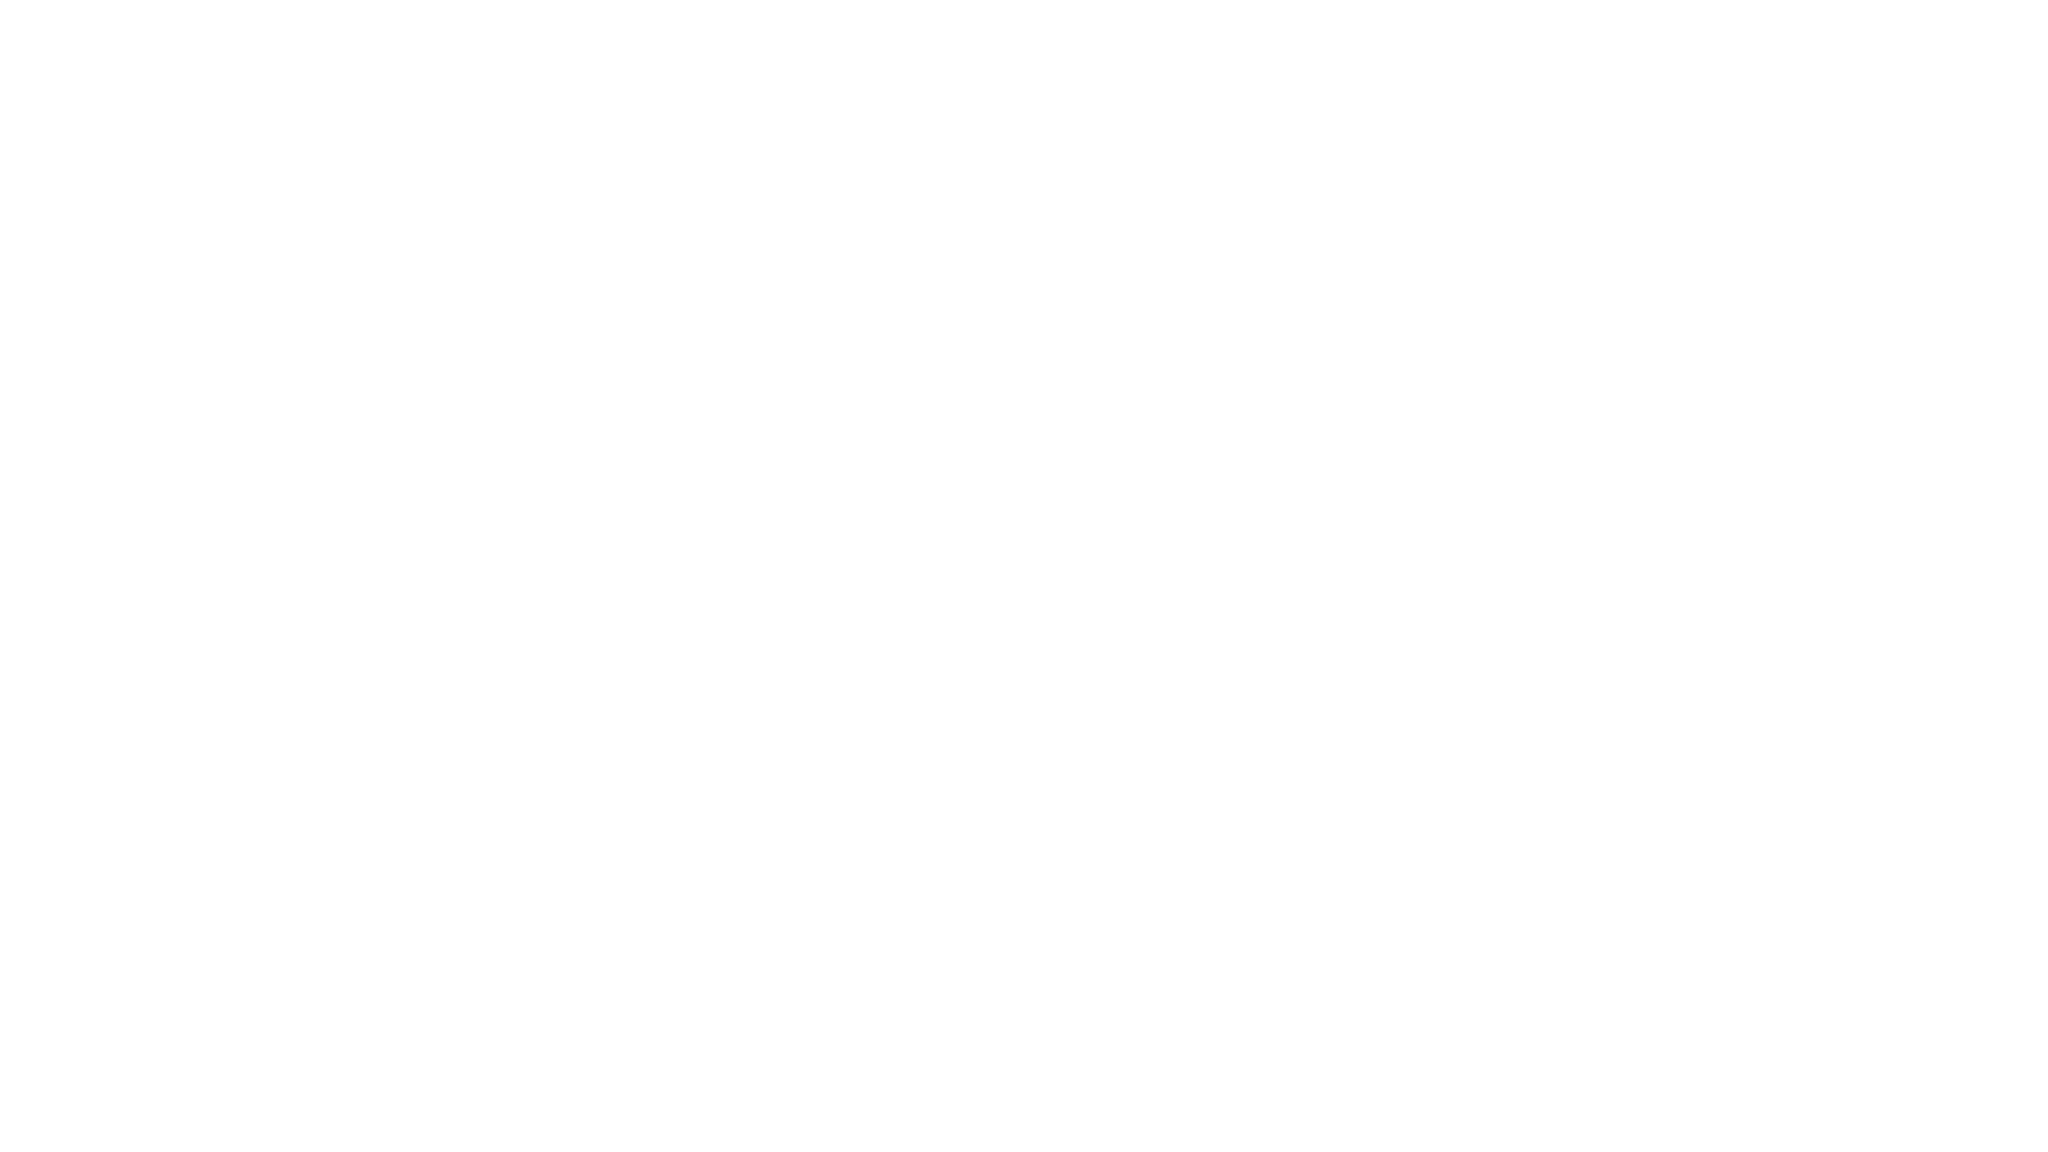 The Hudson Square